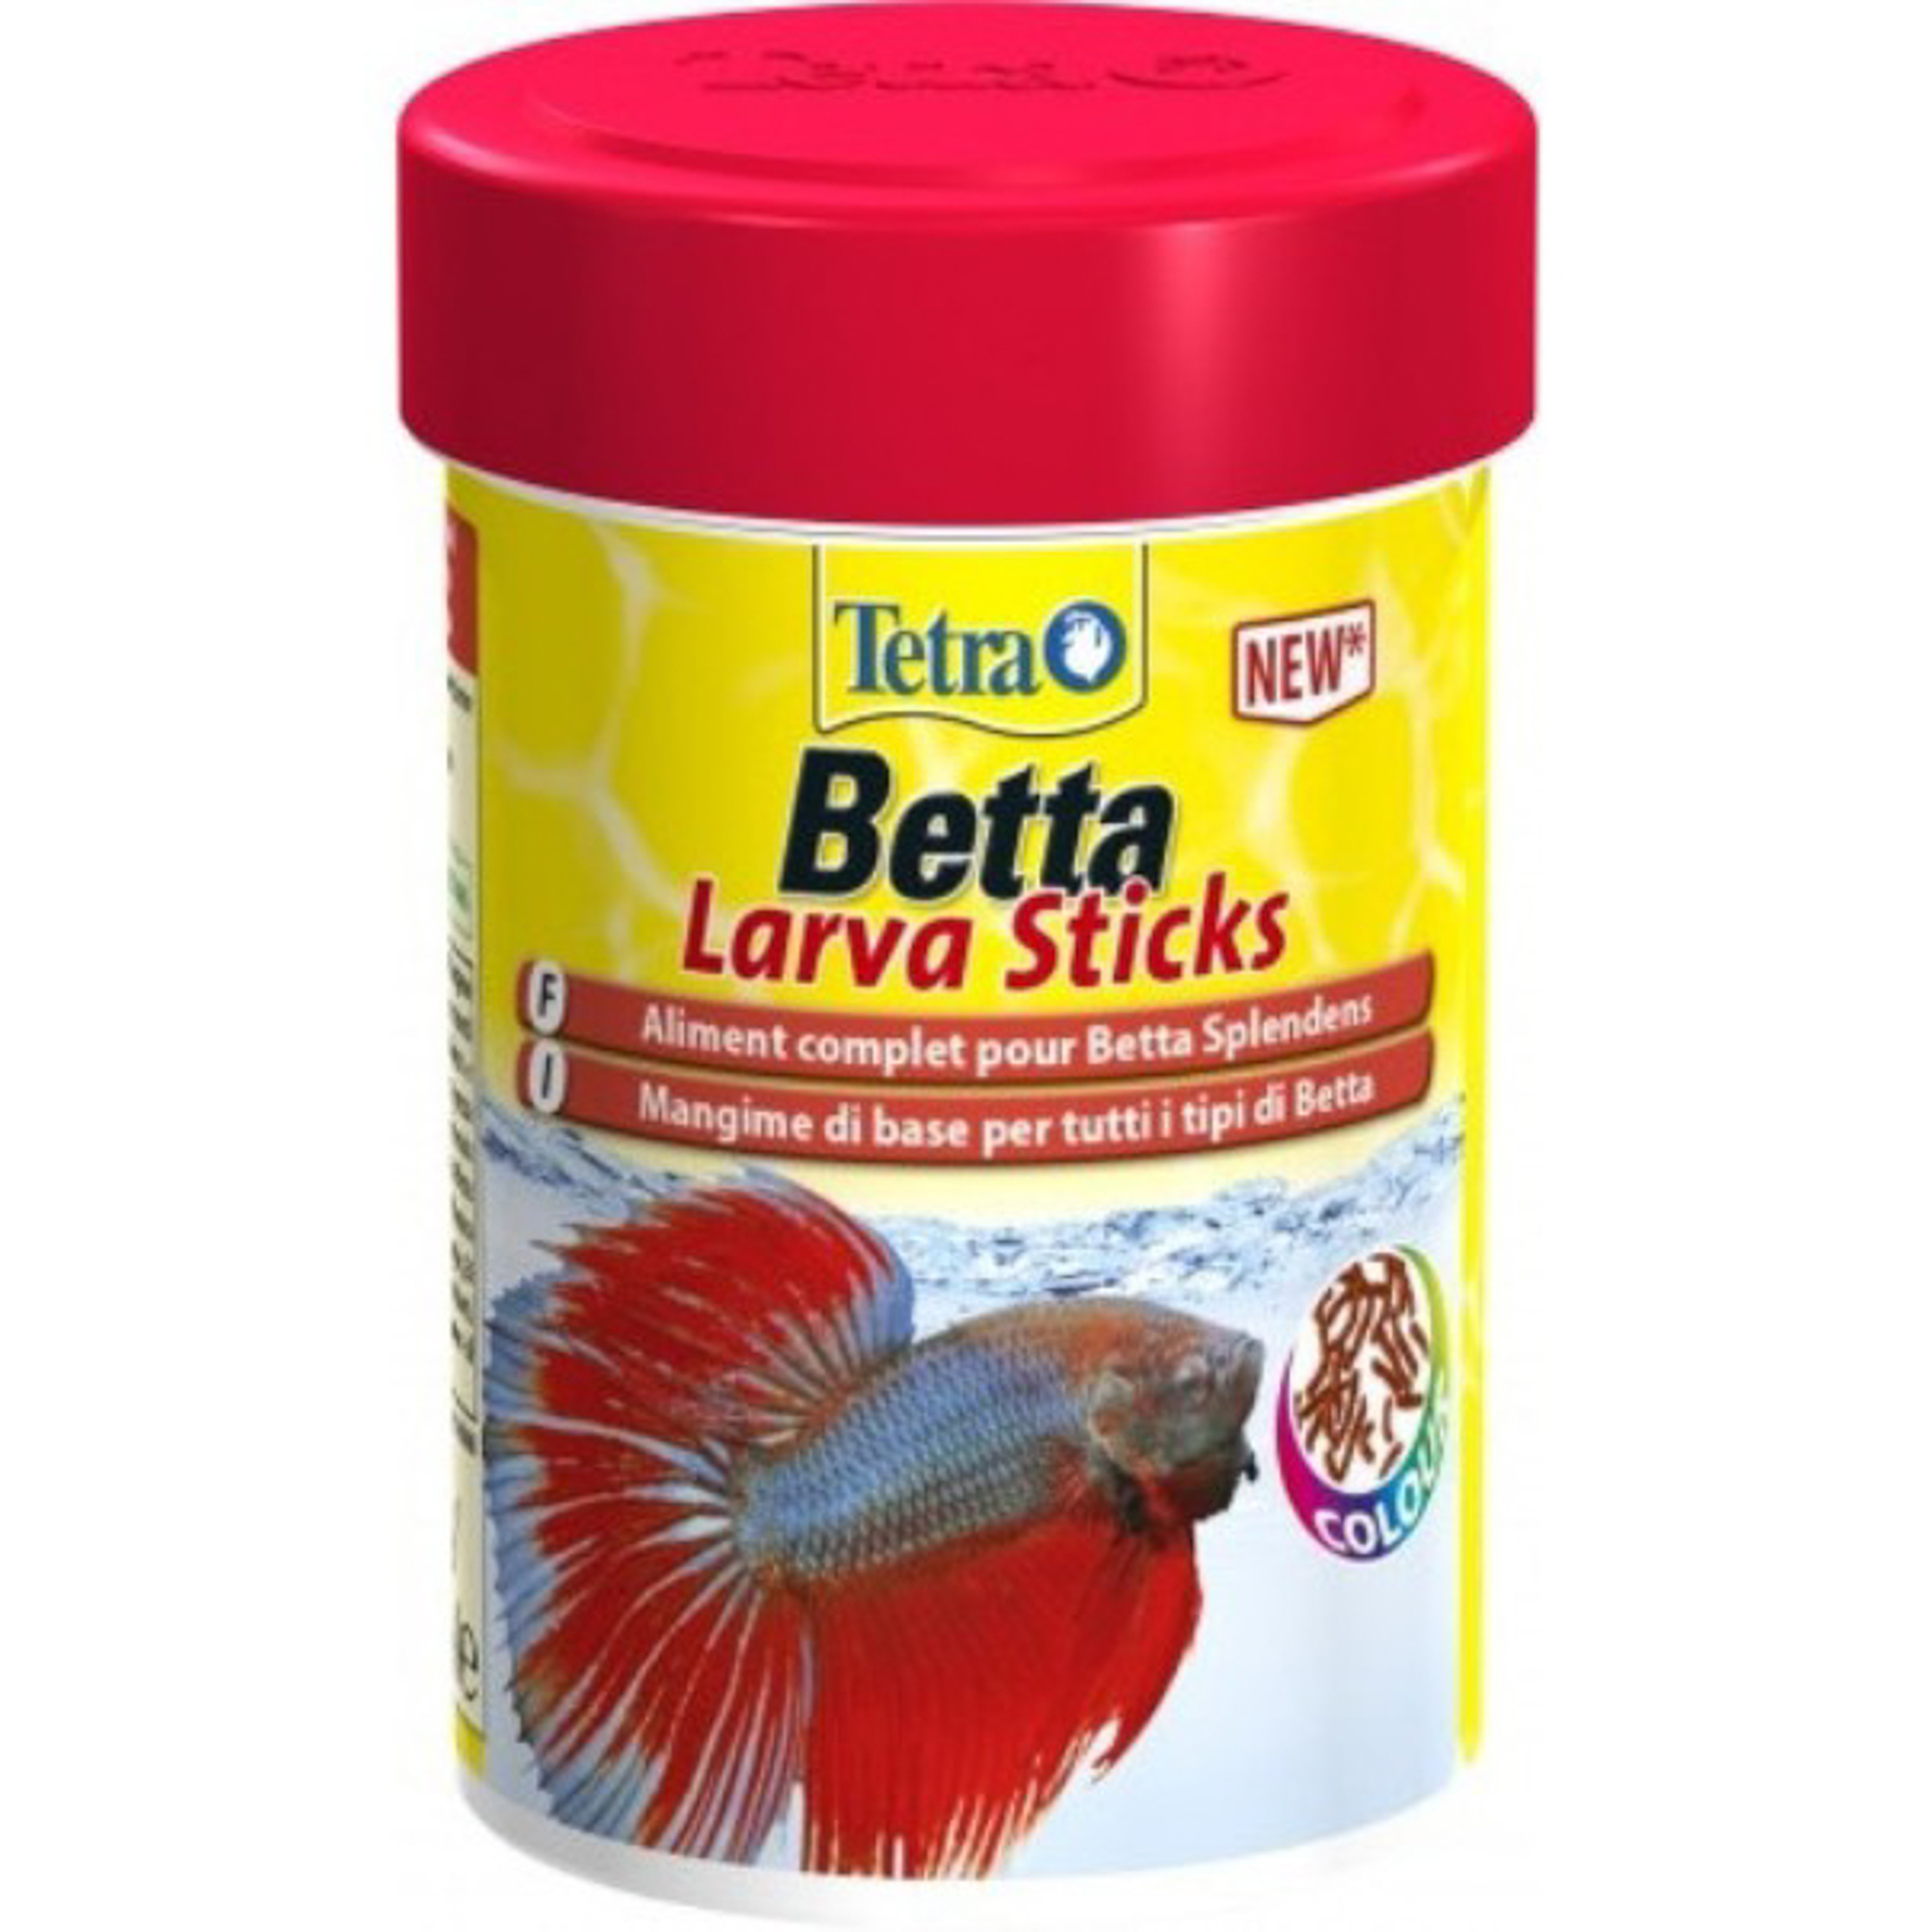 Корм для рыб TETRA Betta Larva Sticks 100мл tetra betta larvasticks корм для петушков и других лабиринтовых рыб палочки 100 мл